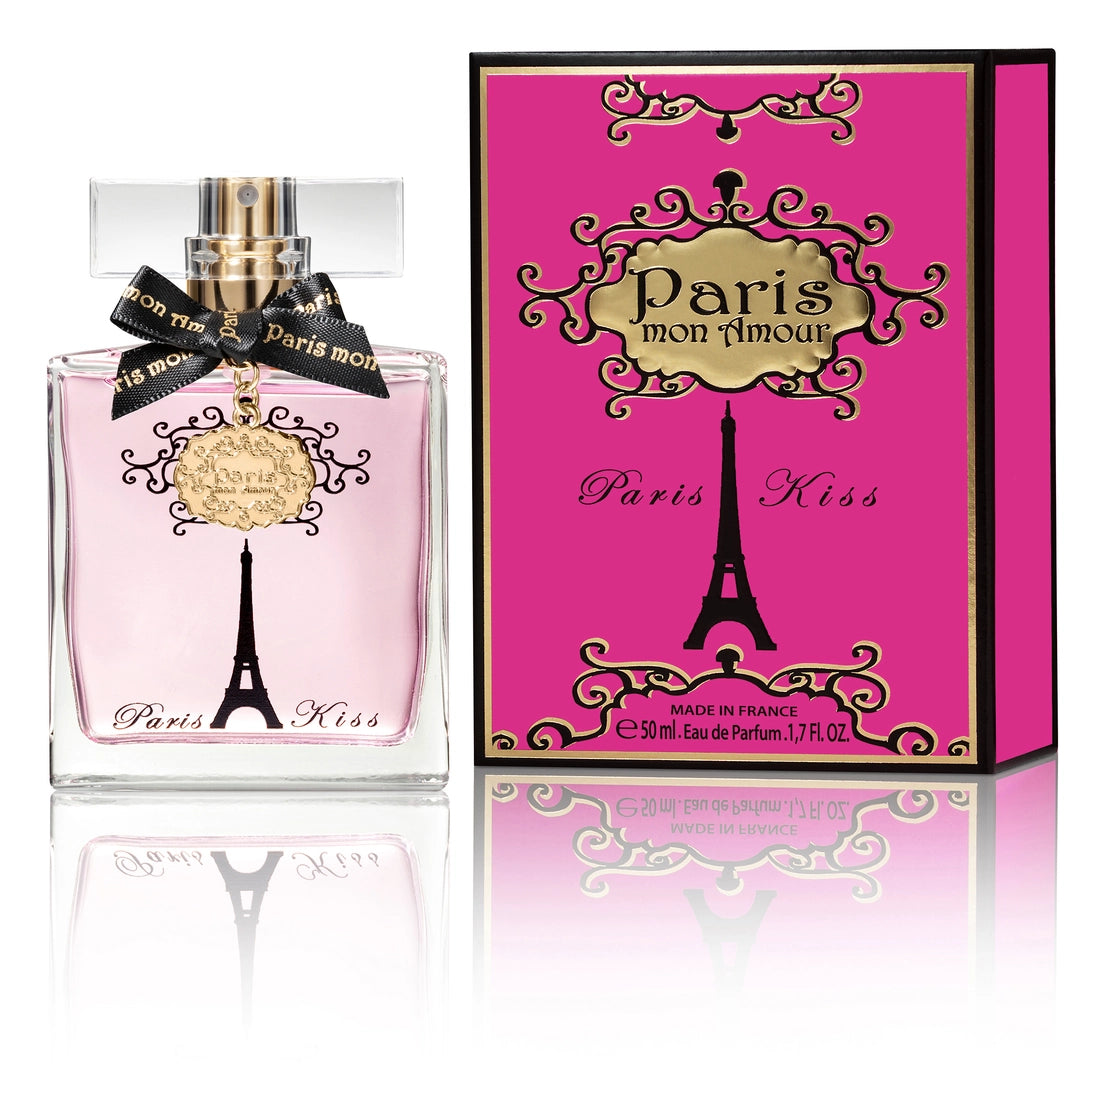 Paris Mon Amour Eau de Perfum - Paris Kiss 50 ml